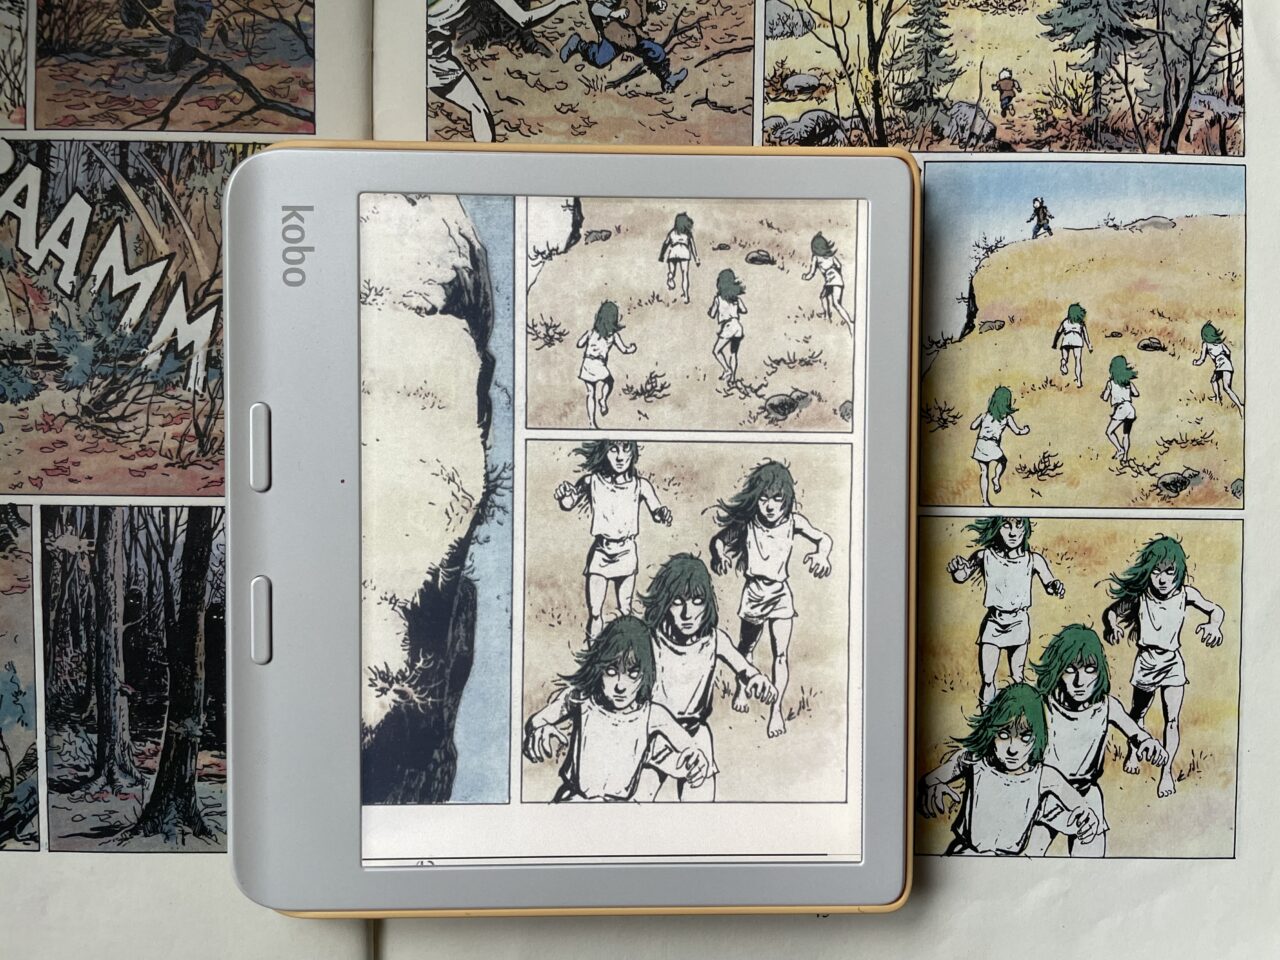 Czytnik e-booków Kobo wyświetlający stronę komiksu z przedstawiającymi bieganie postaciami na tle lasu i otwartej przestrzeni.